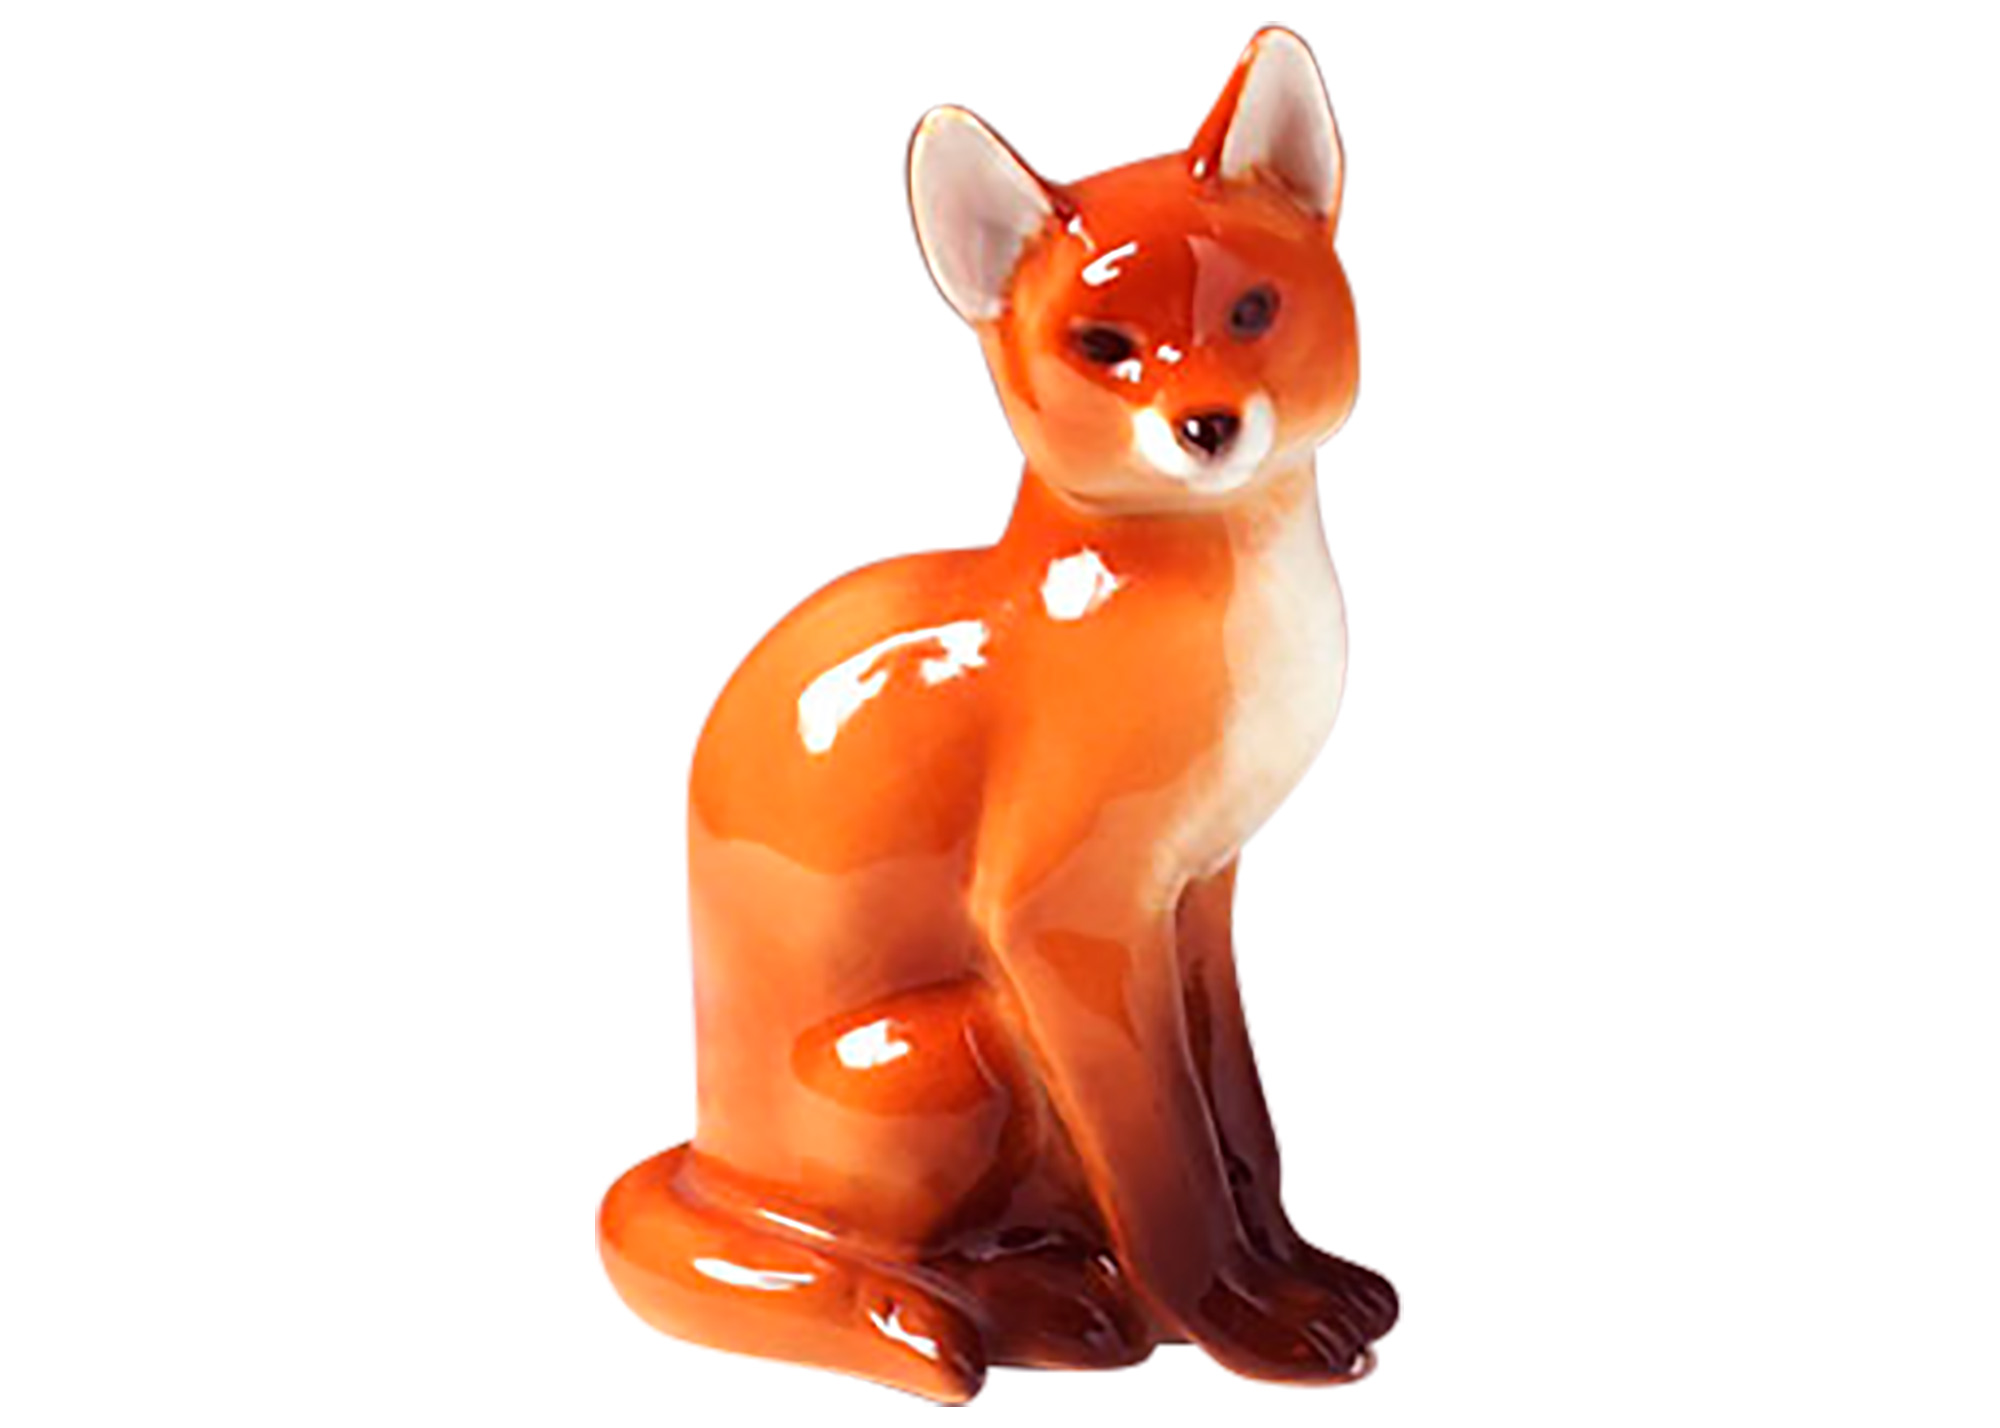 Buy Sitting Fox Figurine at GoldenCockerel.com